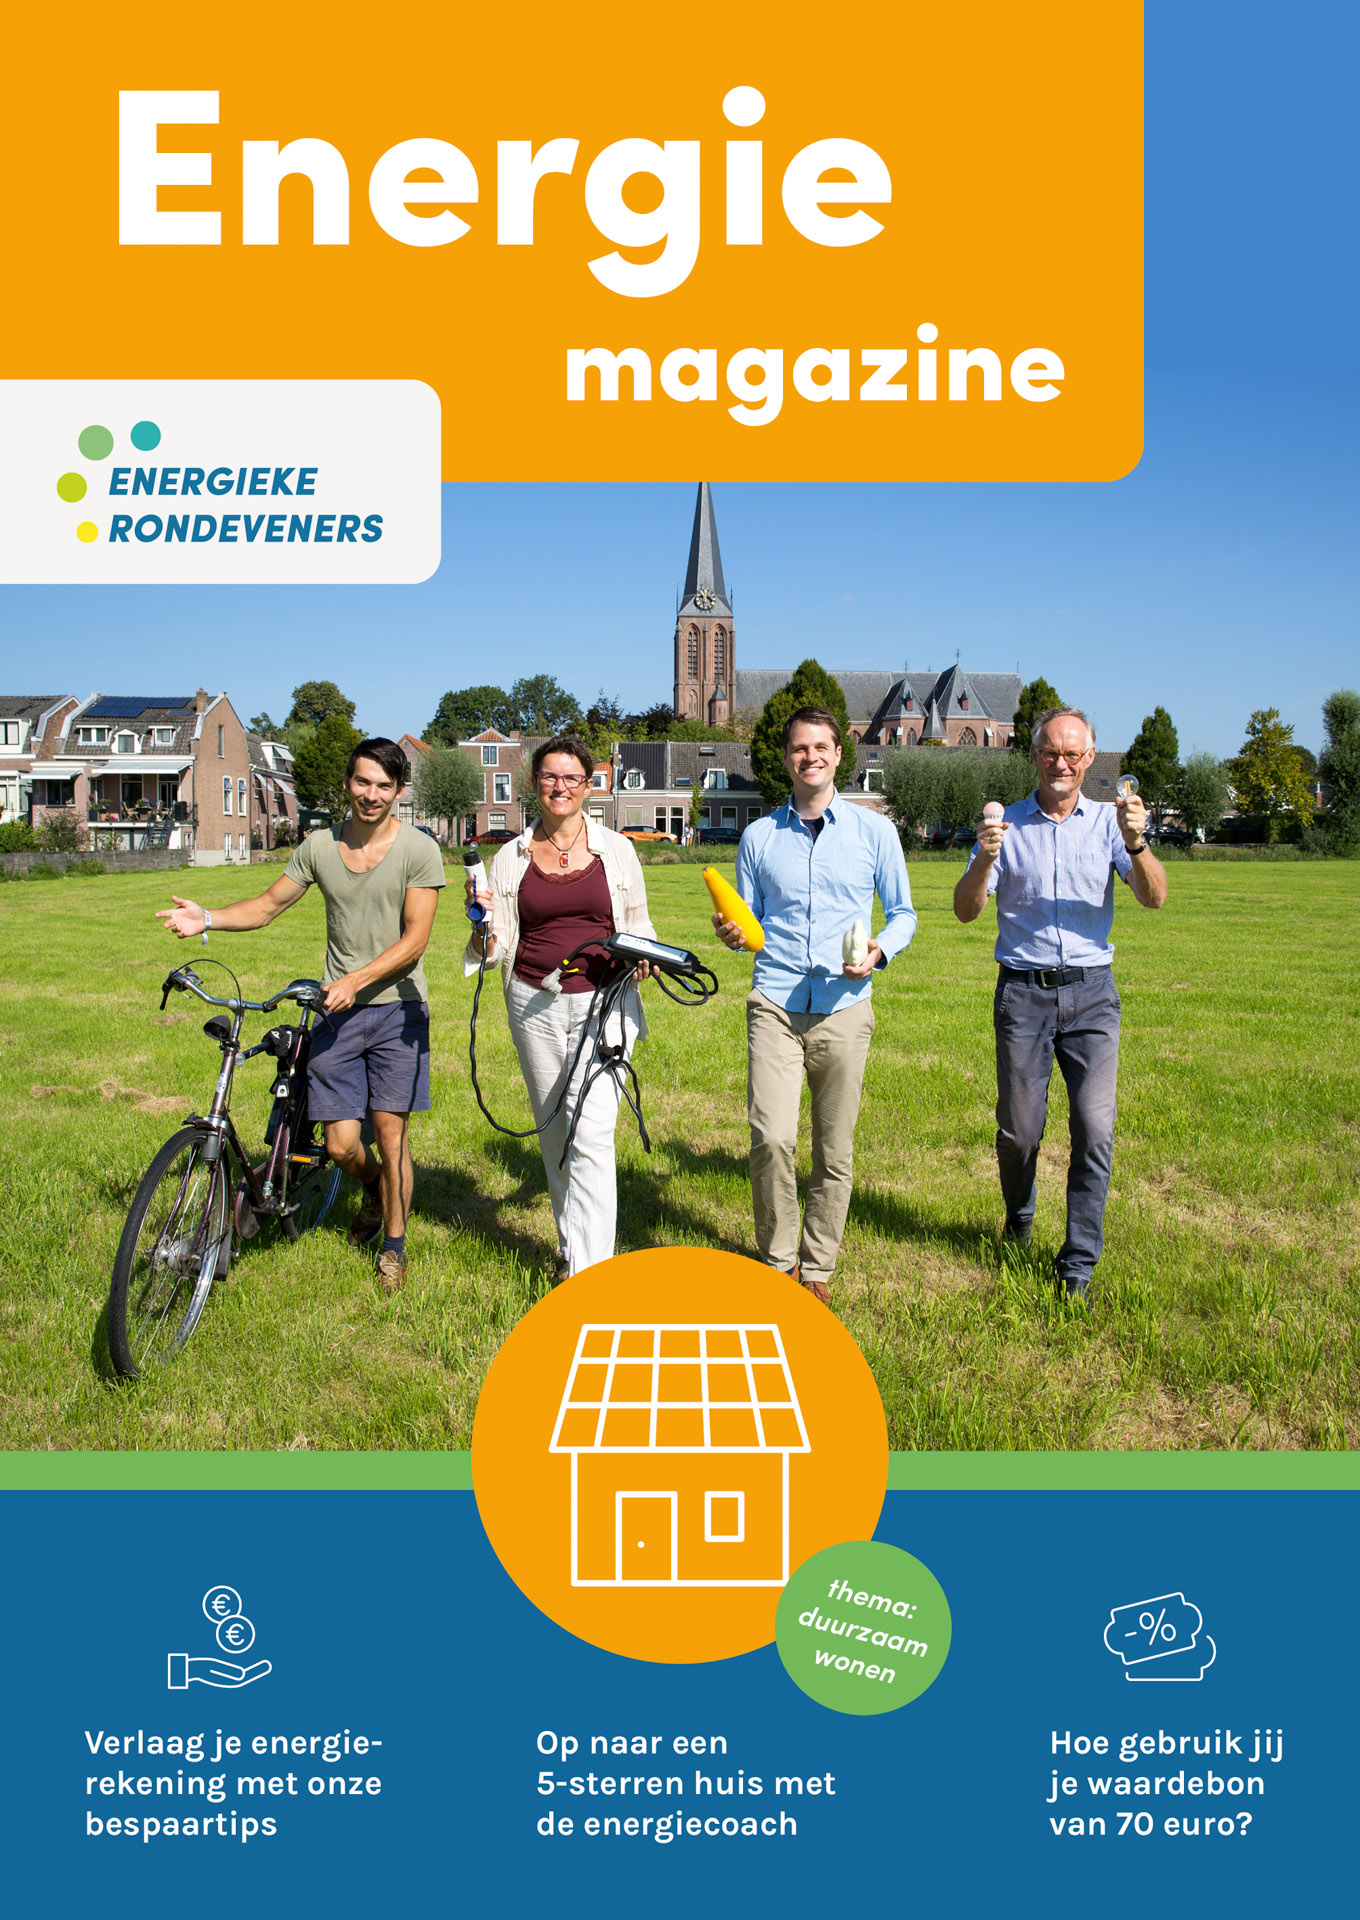 Energieke-Rondeveners-Energie-Magazine-cover